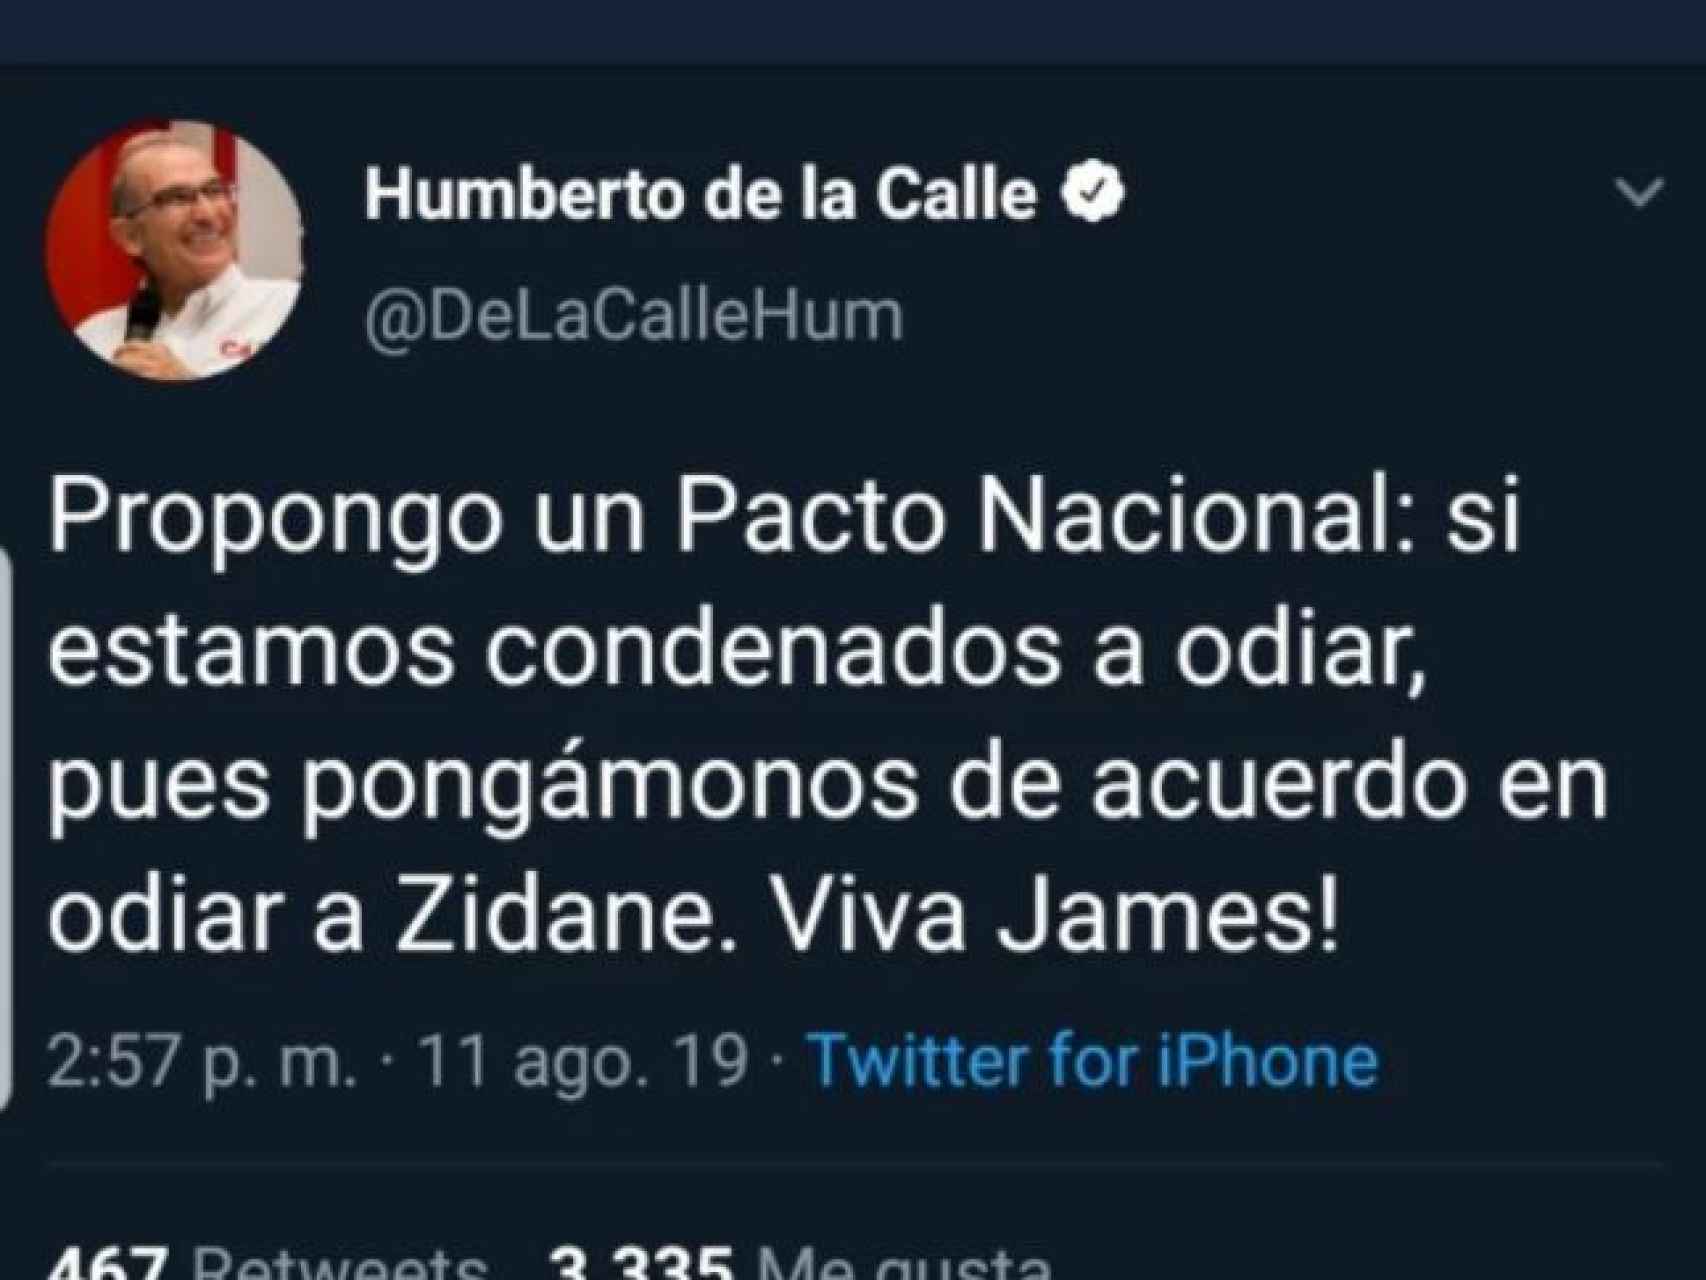 El tuit de Humberto de la Calle sobre Zidane